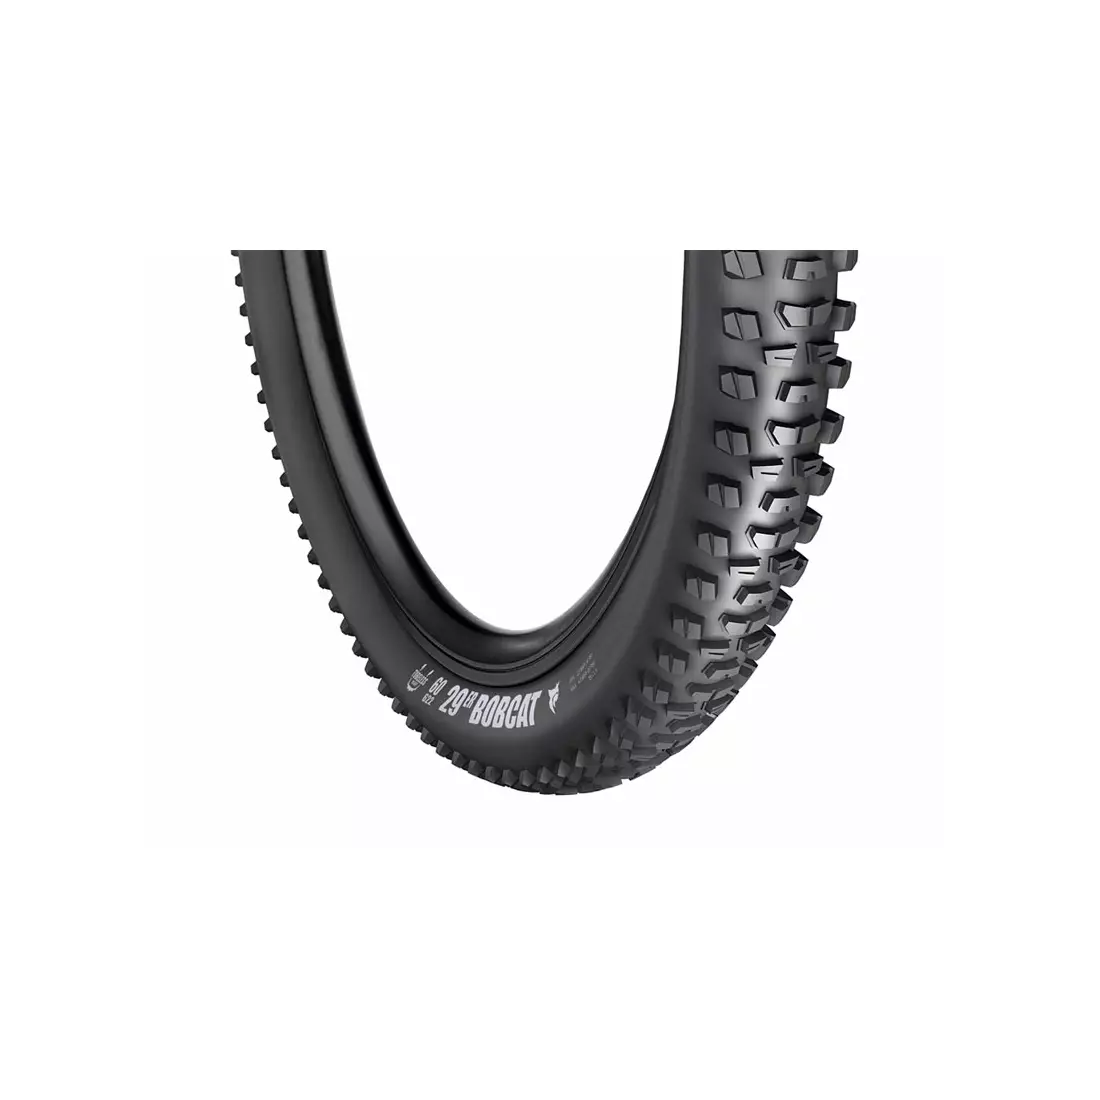 VREDESTEIN pneumatiky na bicykel mtb bobcat 29x2.35 (60-622) TPI120 950g výsuvná čierna VRD-29251